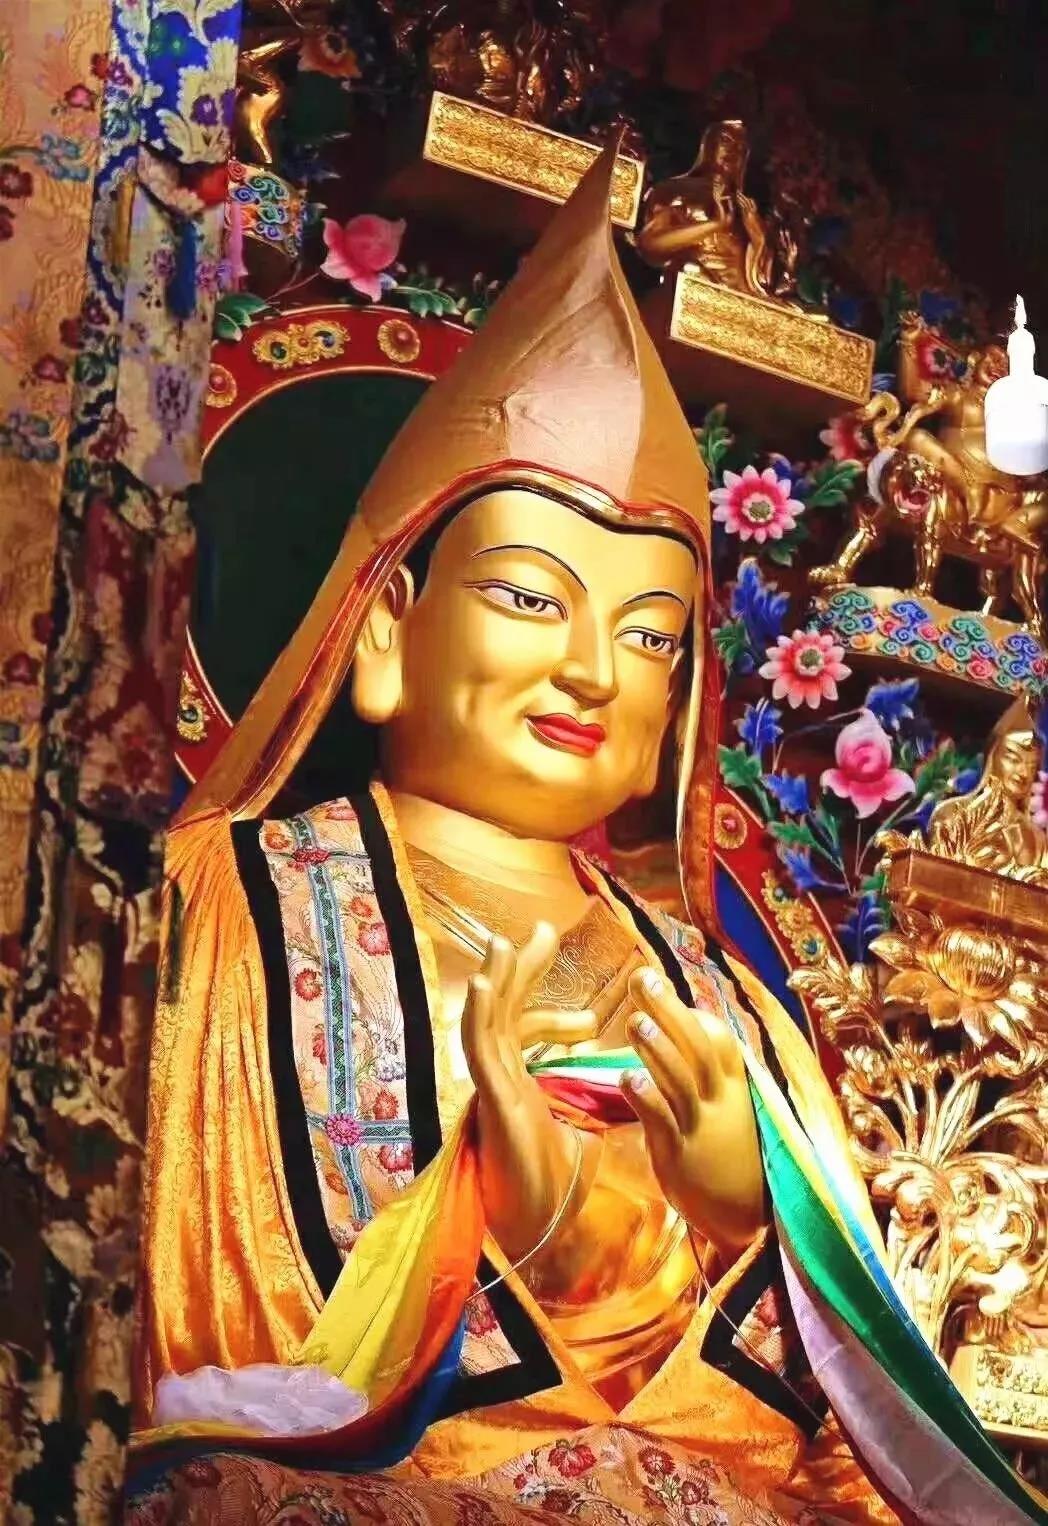 燃灯节丨纪念藏传佛教格鲁派创始人宗喀巴大师圆寂600周年